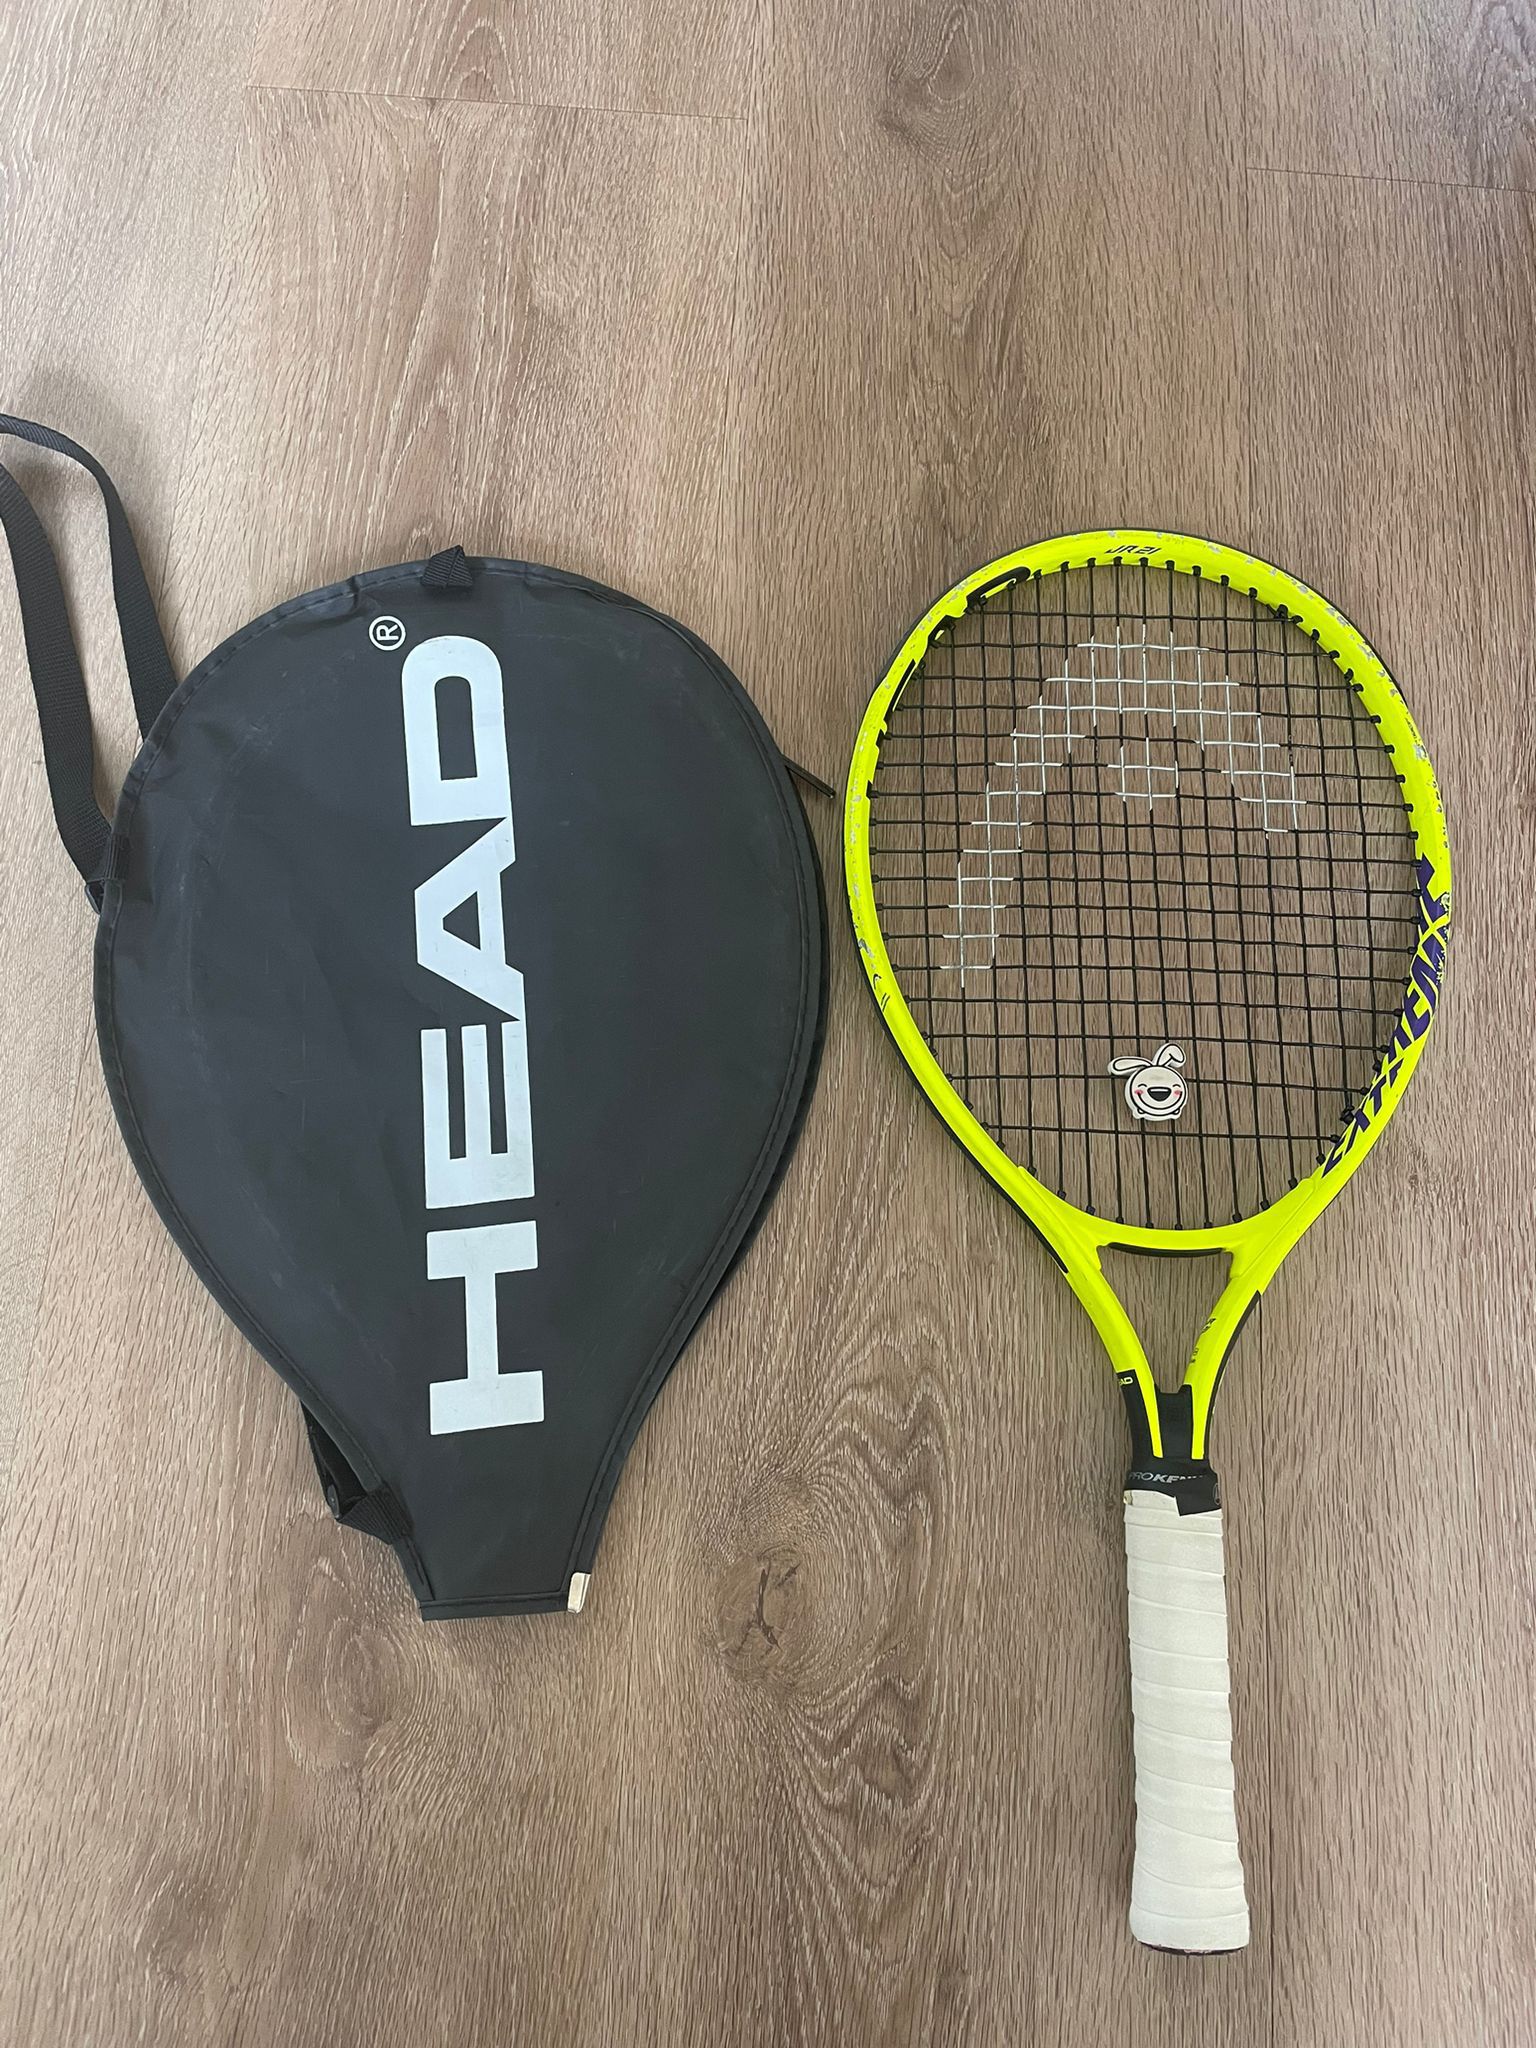 Head tennis racket, Jr 21, used